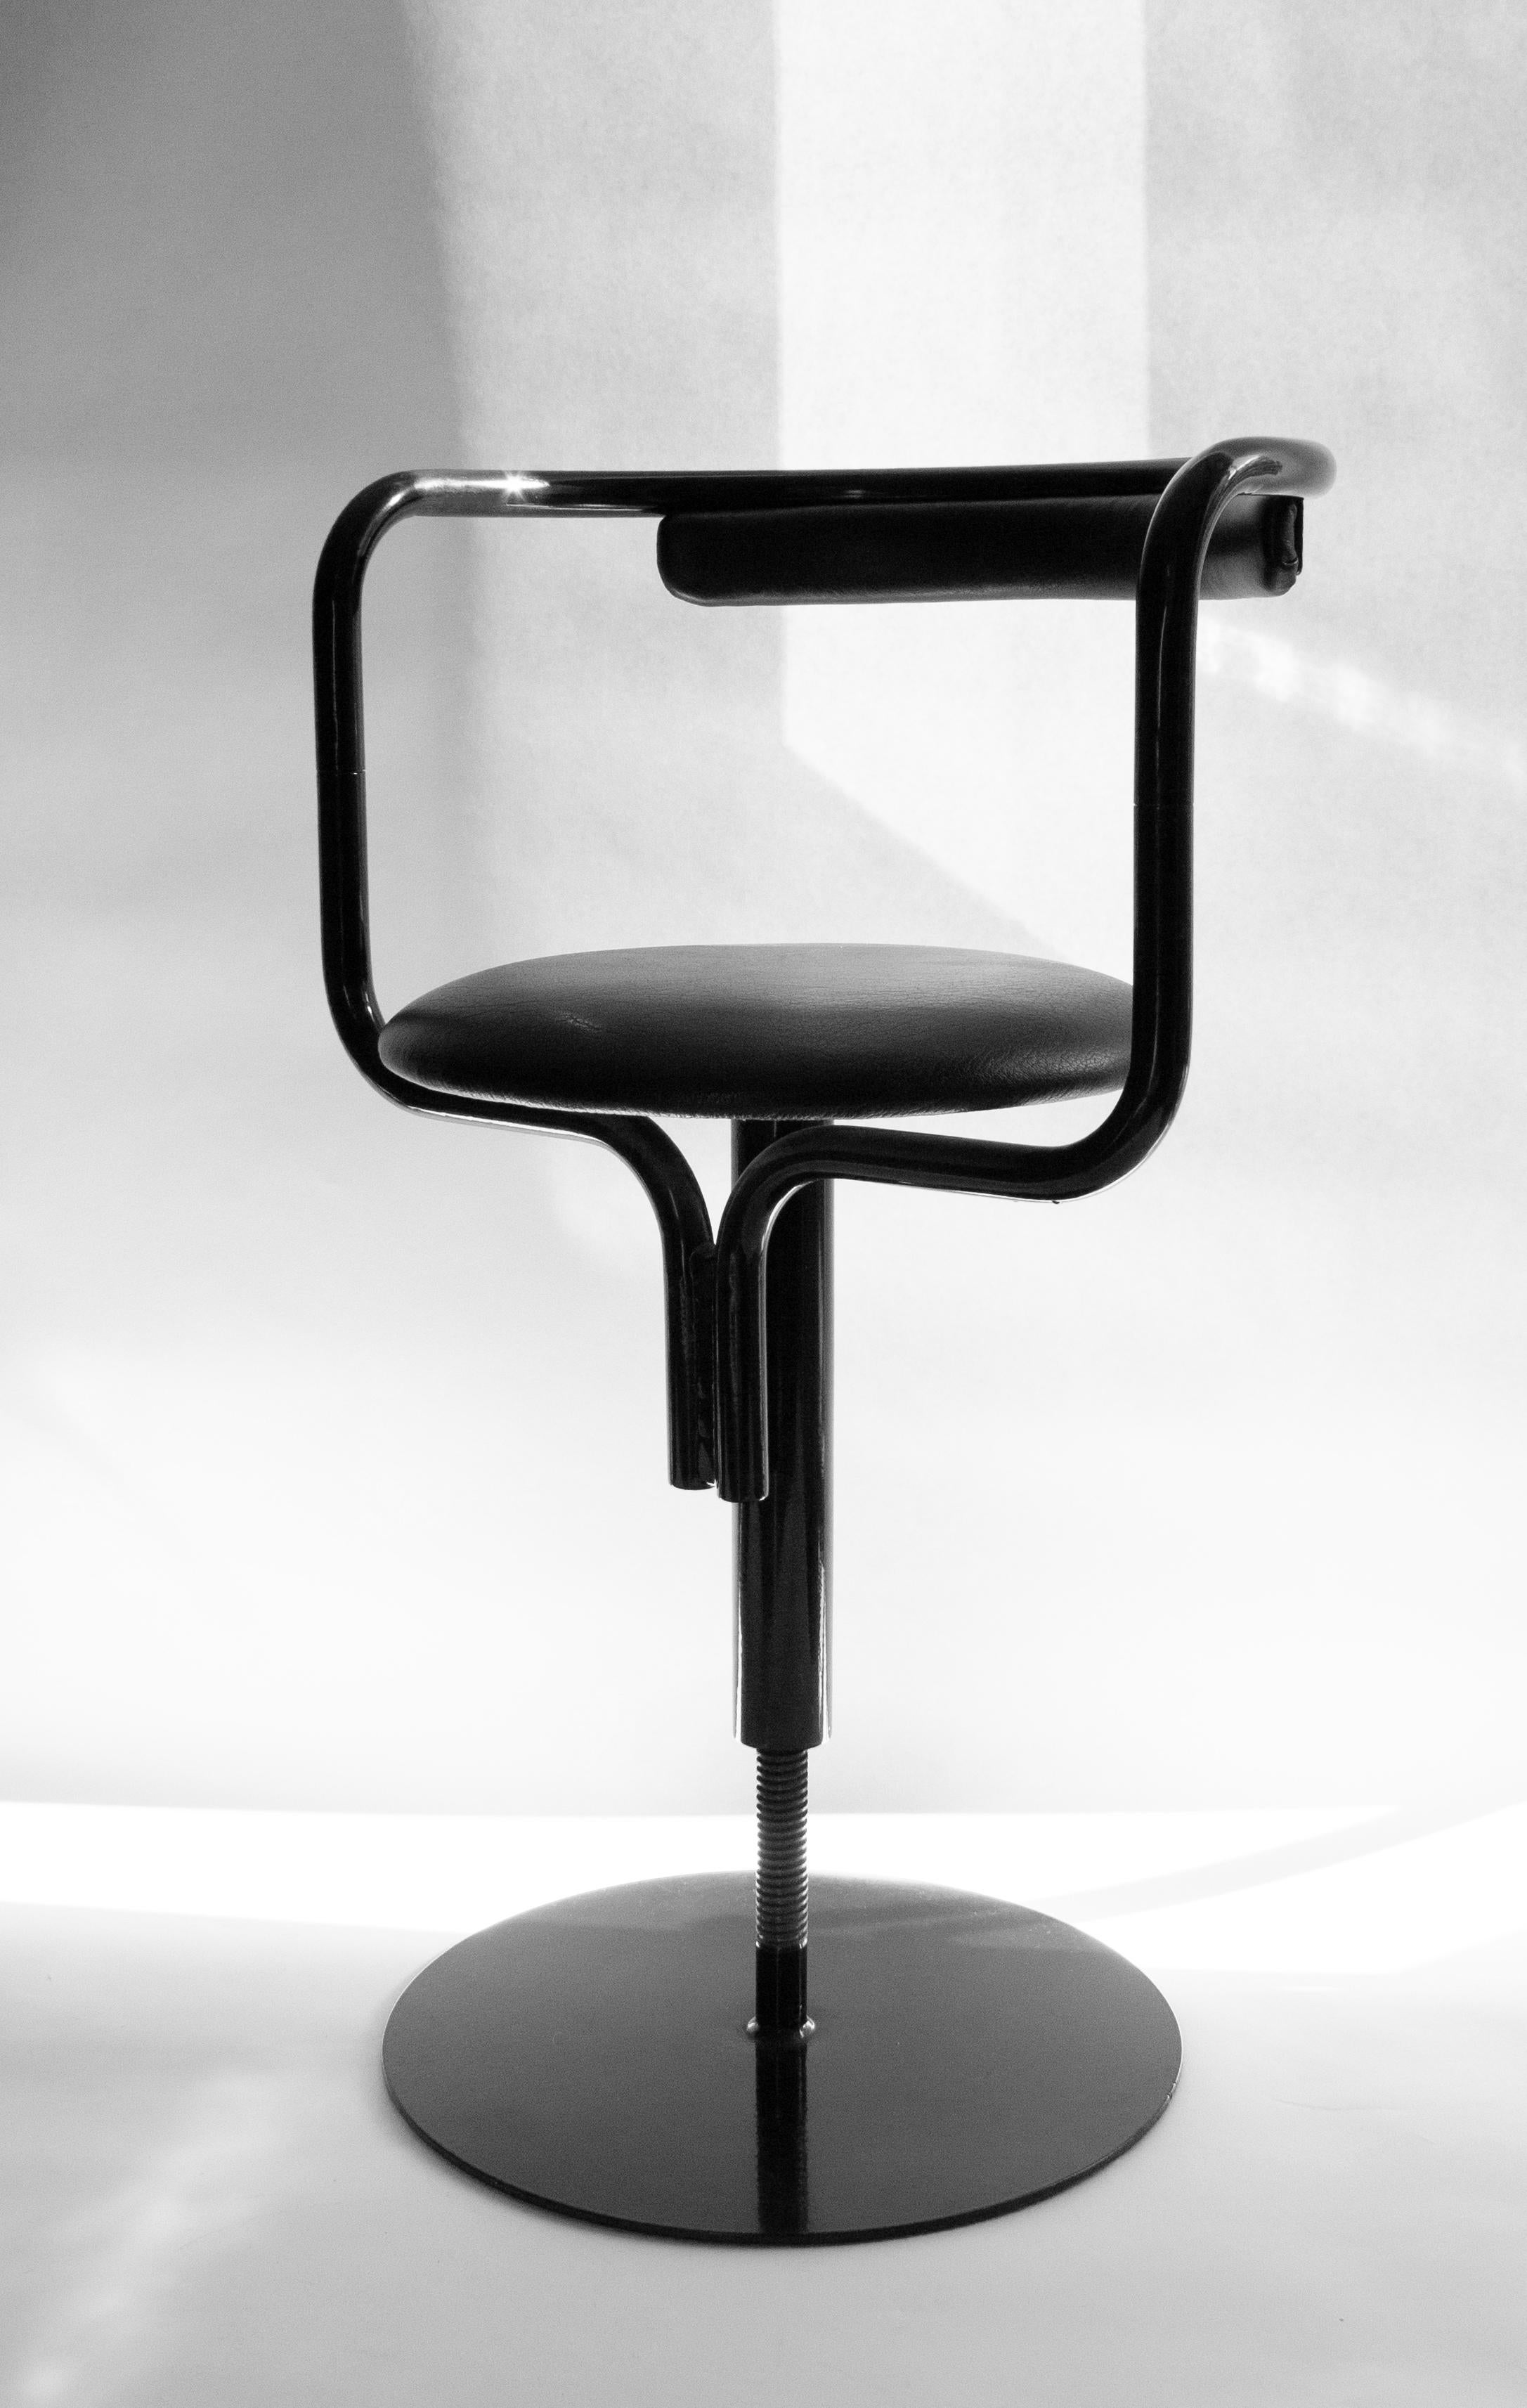 Steel Swedish furniture designer John Kandell's Swivel Chair 